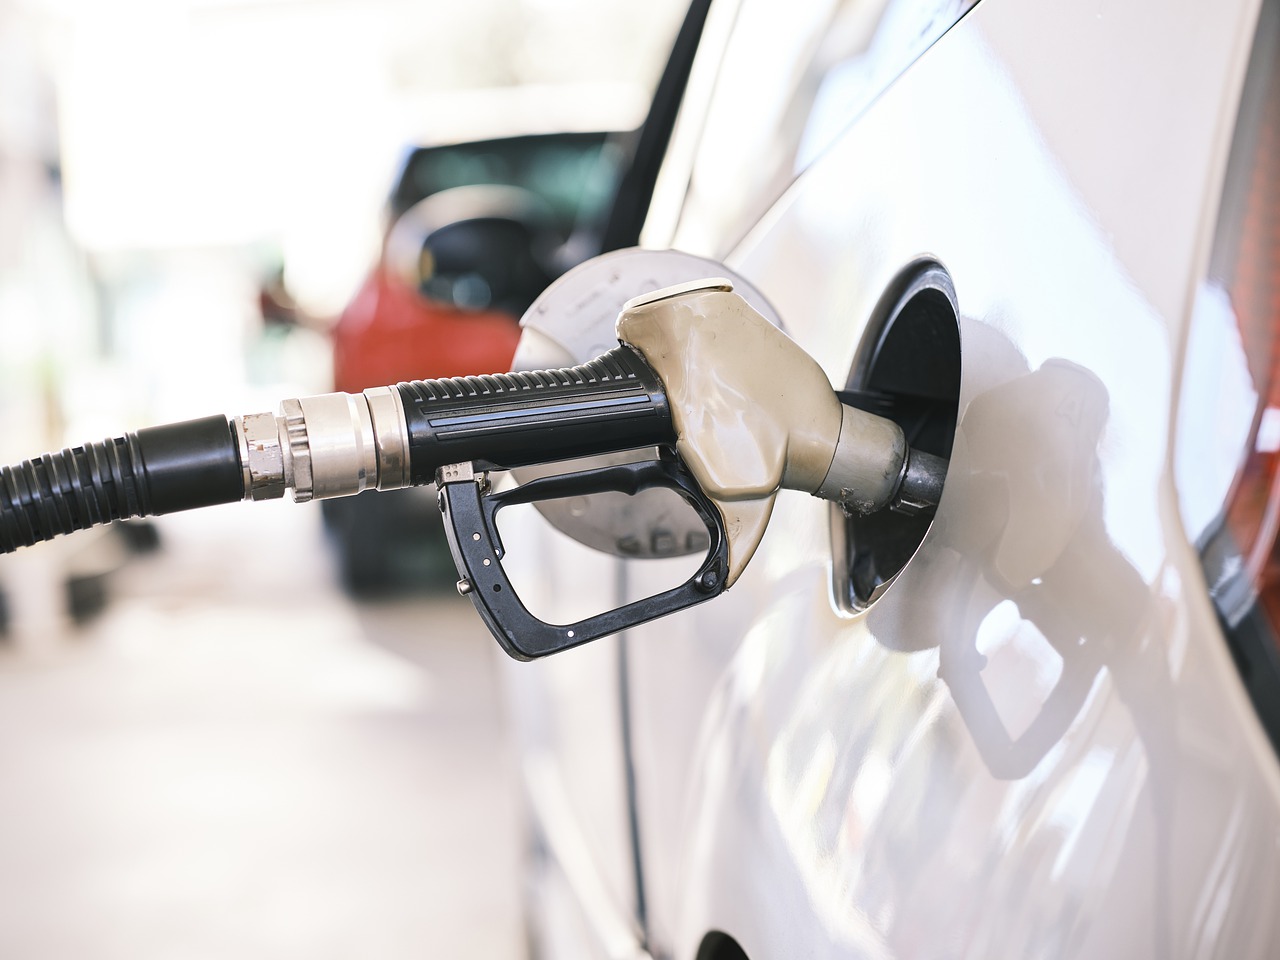 Gasolina ficou mais barata na semana, enquanto etanol se manteve estável